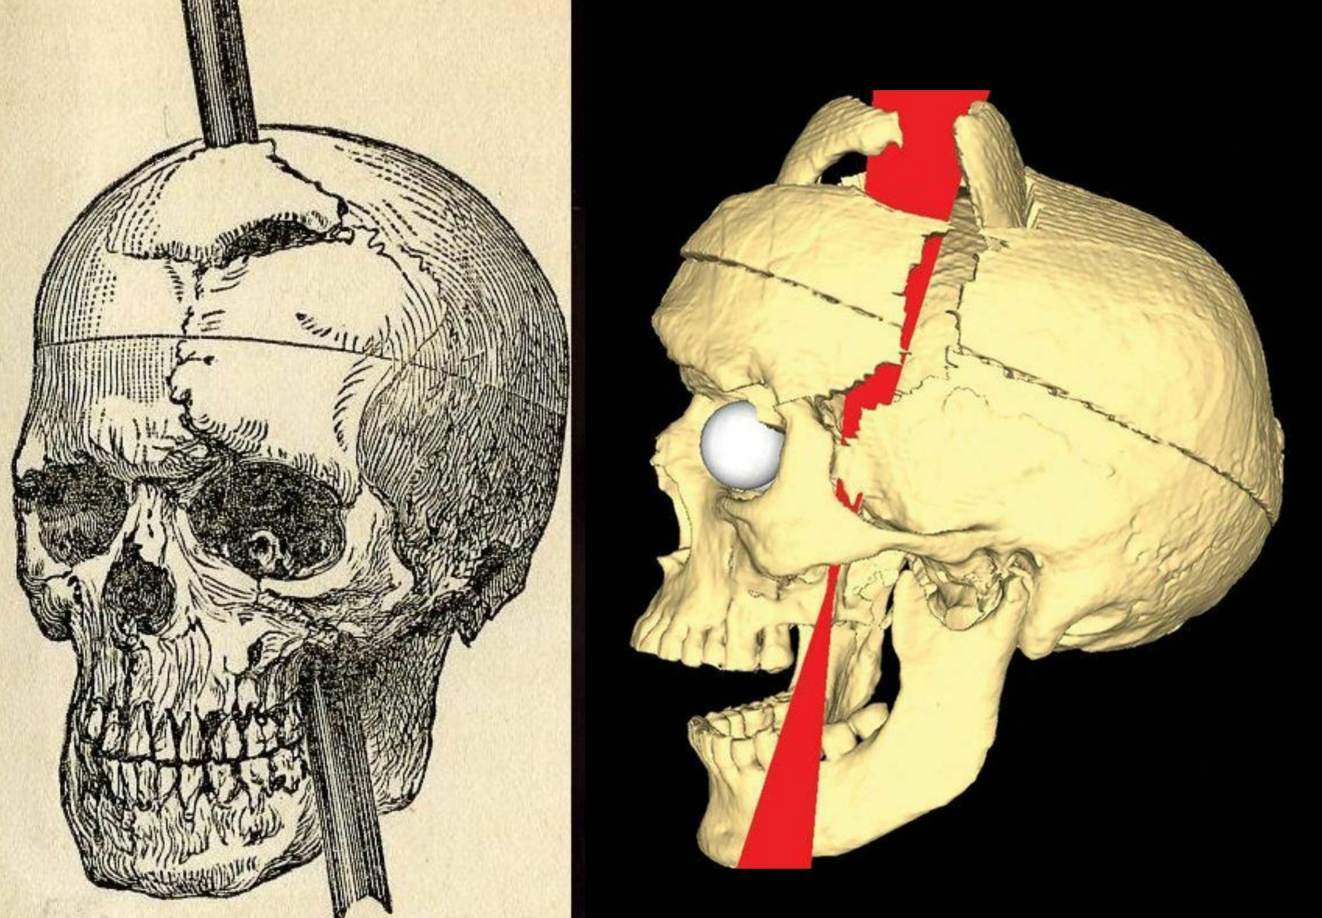 Imaginea de reproducere a accidentului și fotografia craniului: inițial, nu au existat multe efecte secundare notabile din accident, dar un lucru care s-a dezvoltat în cele 12 zile de declin a fost o problemă cu jumătate din fața sa. În spatele ochiului stâng, pe unde trecuse vârful, a început să crească o infecție. Ochiul a început să se umfle și bucăți de creier și puroi infectate au ieșit din priză. Phineas a încetat să mai poată vedea din acel ochi și a dezvoltat ptoză sau o cădere a pleoapei. Această ptoză nu va dispărea pentru restul vieții sale. Cicatricile de la accidentarea inițială au rămas și ele. De fapt, mulți mușchi din partea stângă a feței sale nu și-au mai revenit complet, lăsându-l cu puțină mișcare pe acea parte.